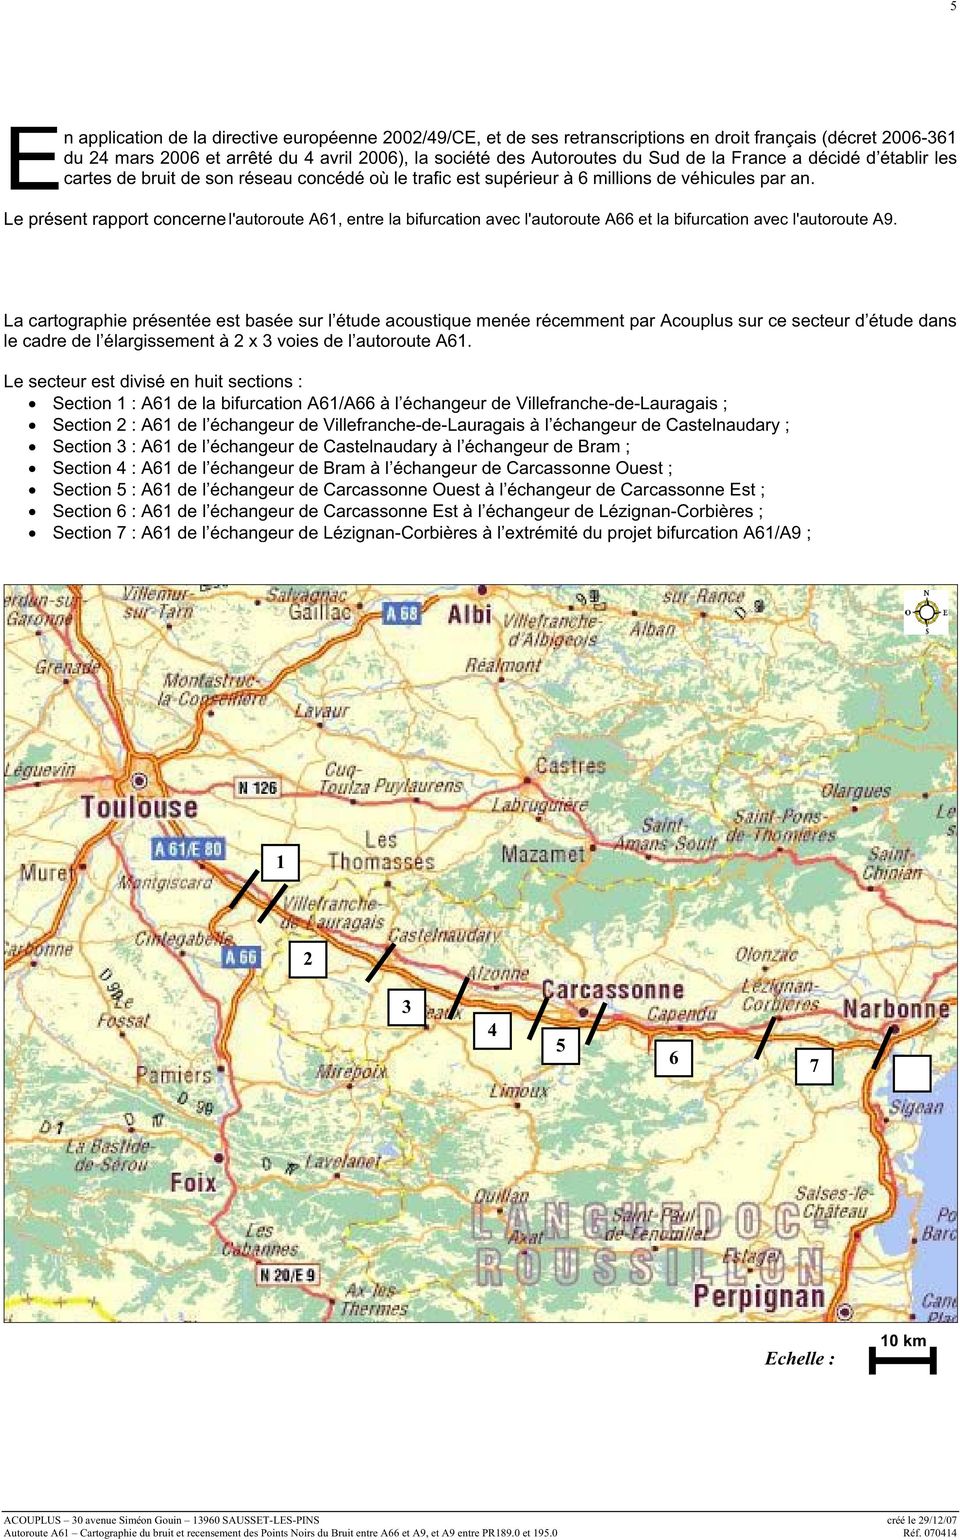 Le présent rapport concerne l'autoroute : A61, entre la bifurcation avec l'autoroute A66 et la bifurcation avec l'autoroute A9.